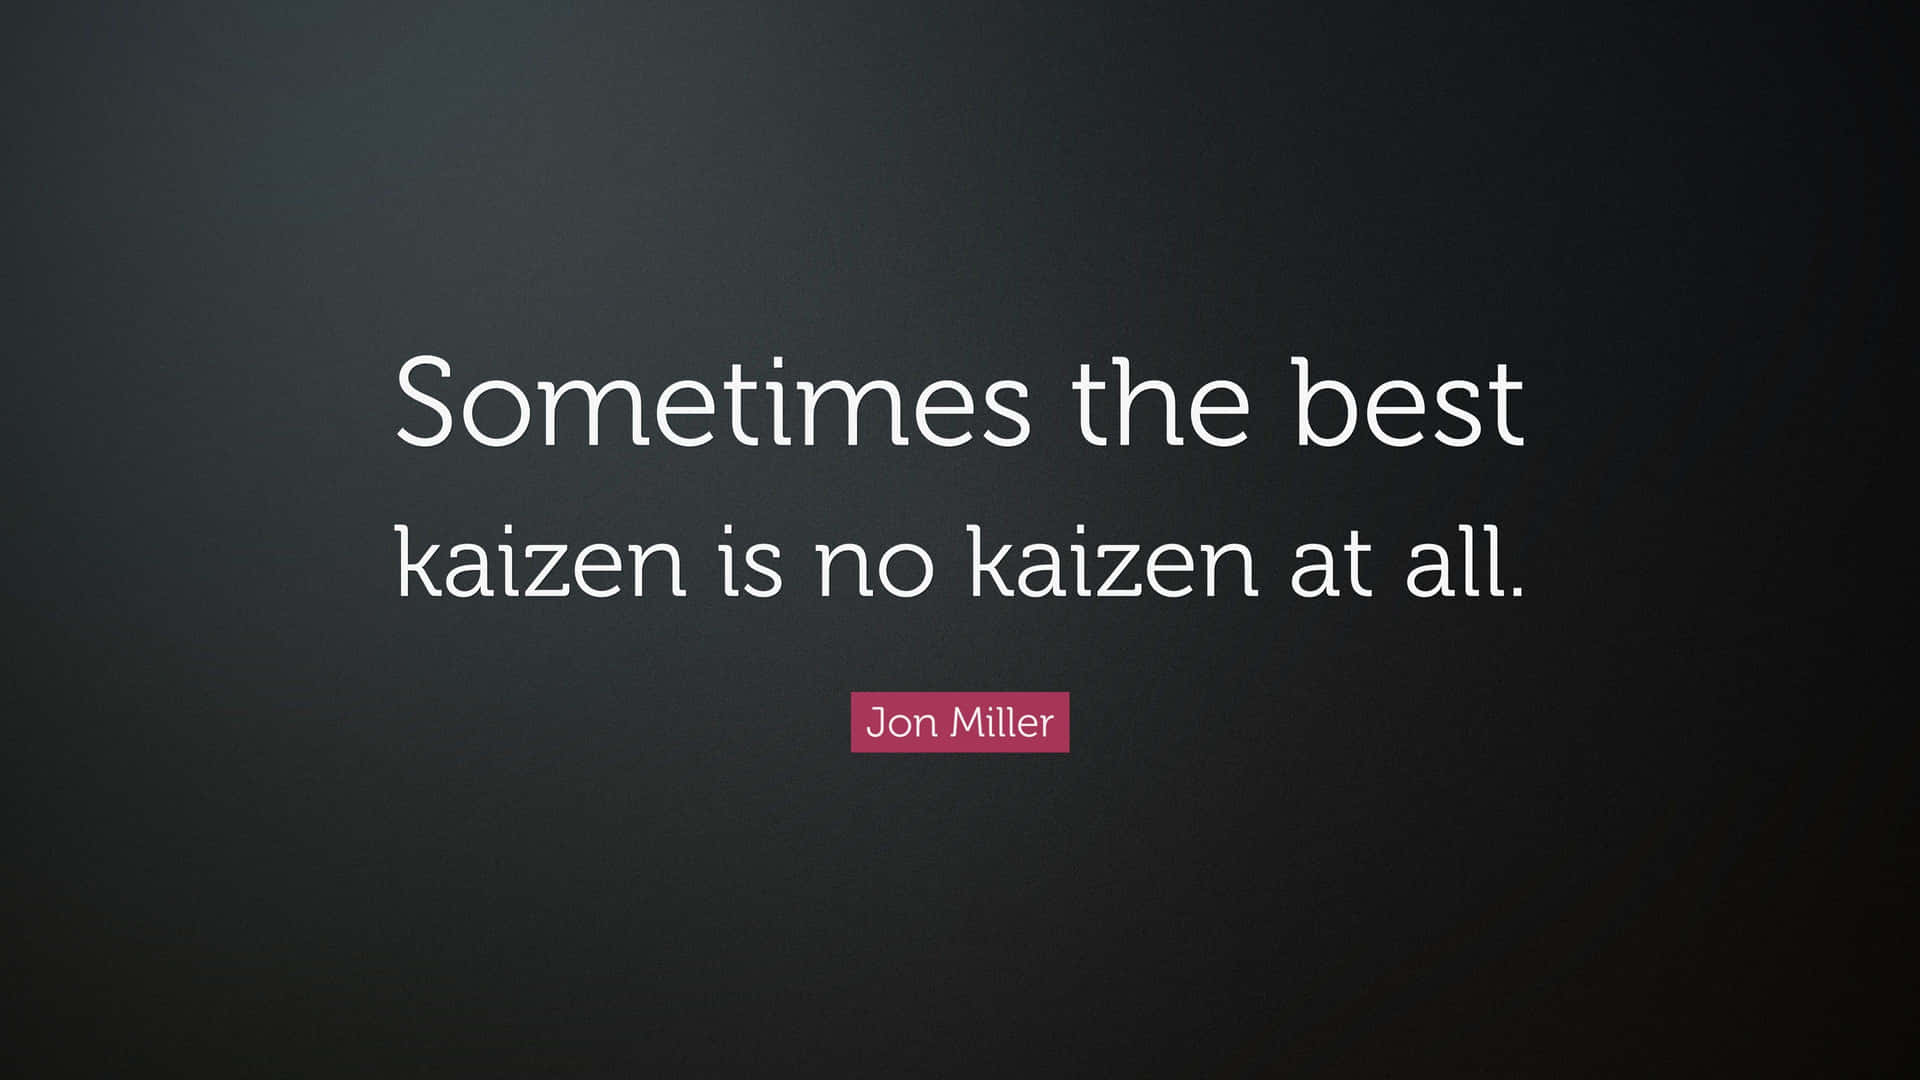 Kaizen Philosophy Quote Jon Miller Wallpaper